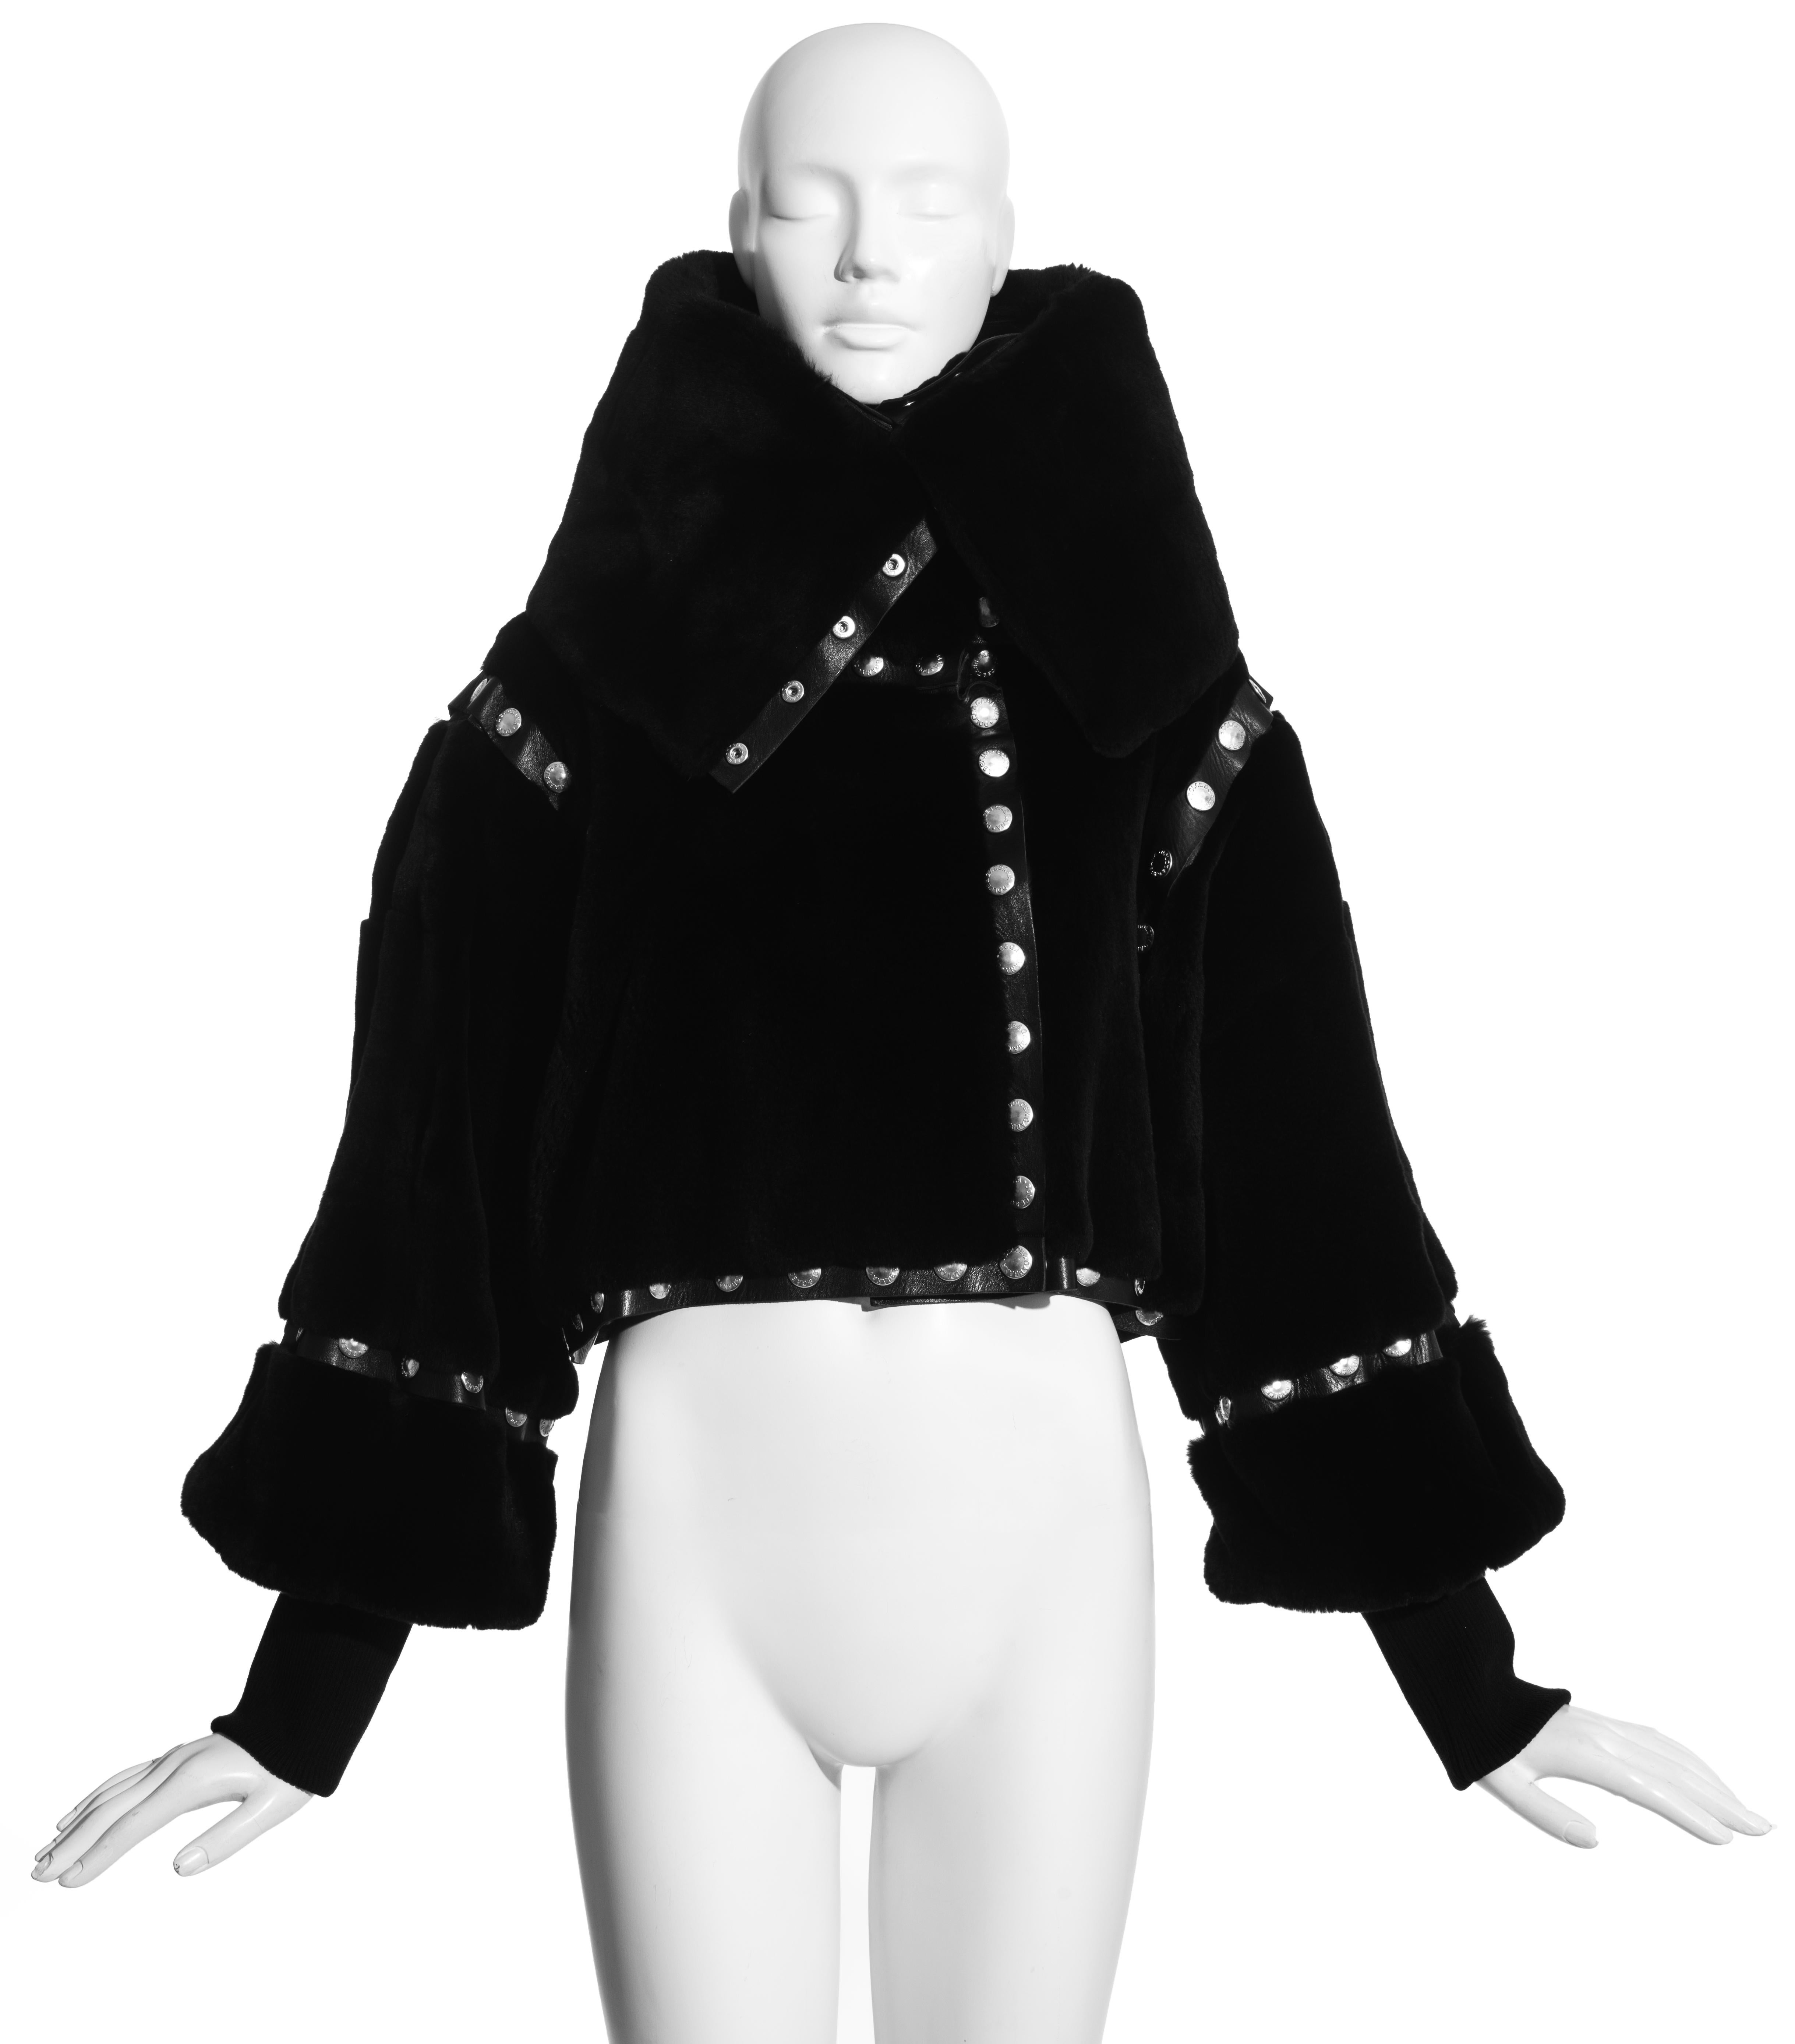 Dolce & Gabbana - Veste courte en cuir et fourrure noire, composée de six panneaux individuels attachés par des boutons-pression argentés.

Automne-Hiver 2003
